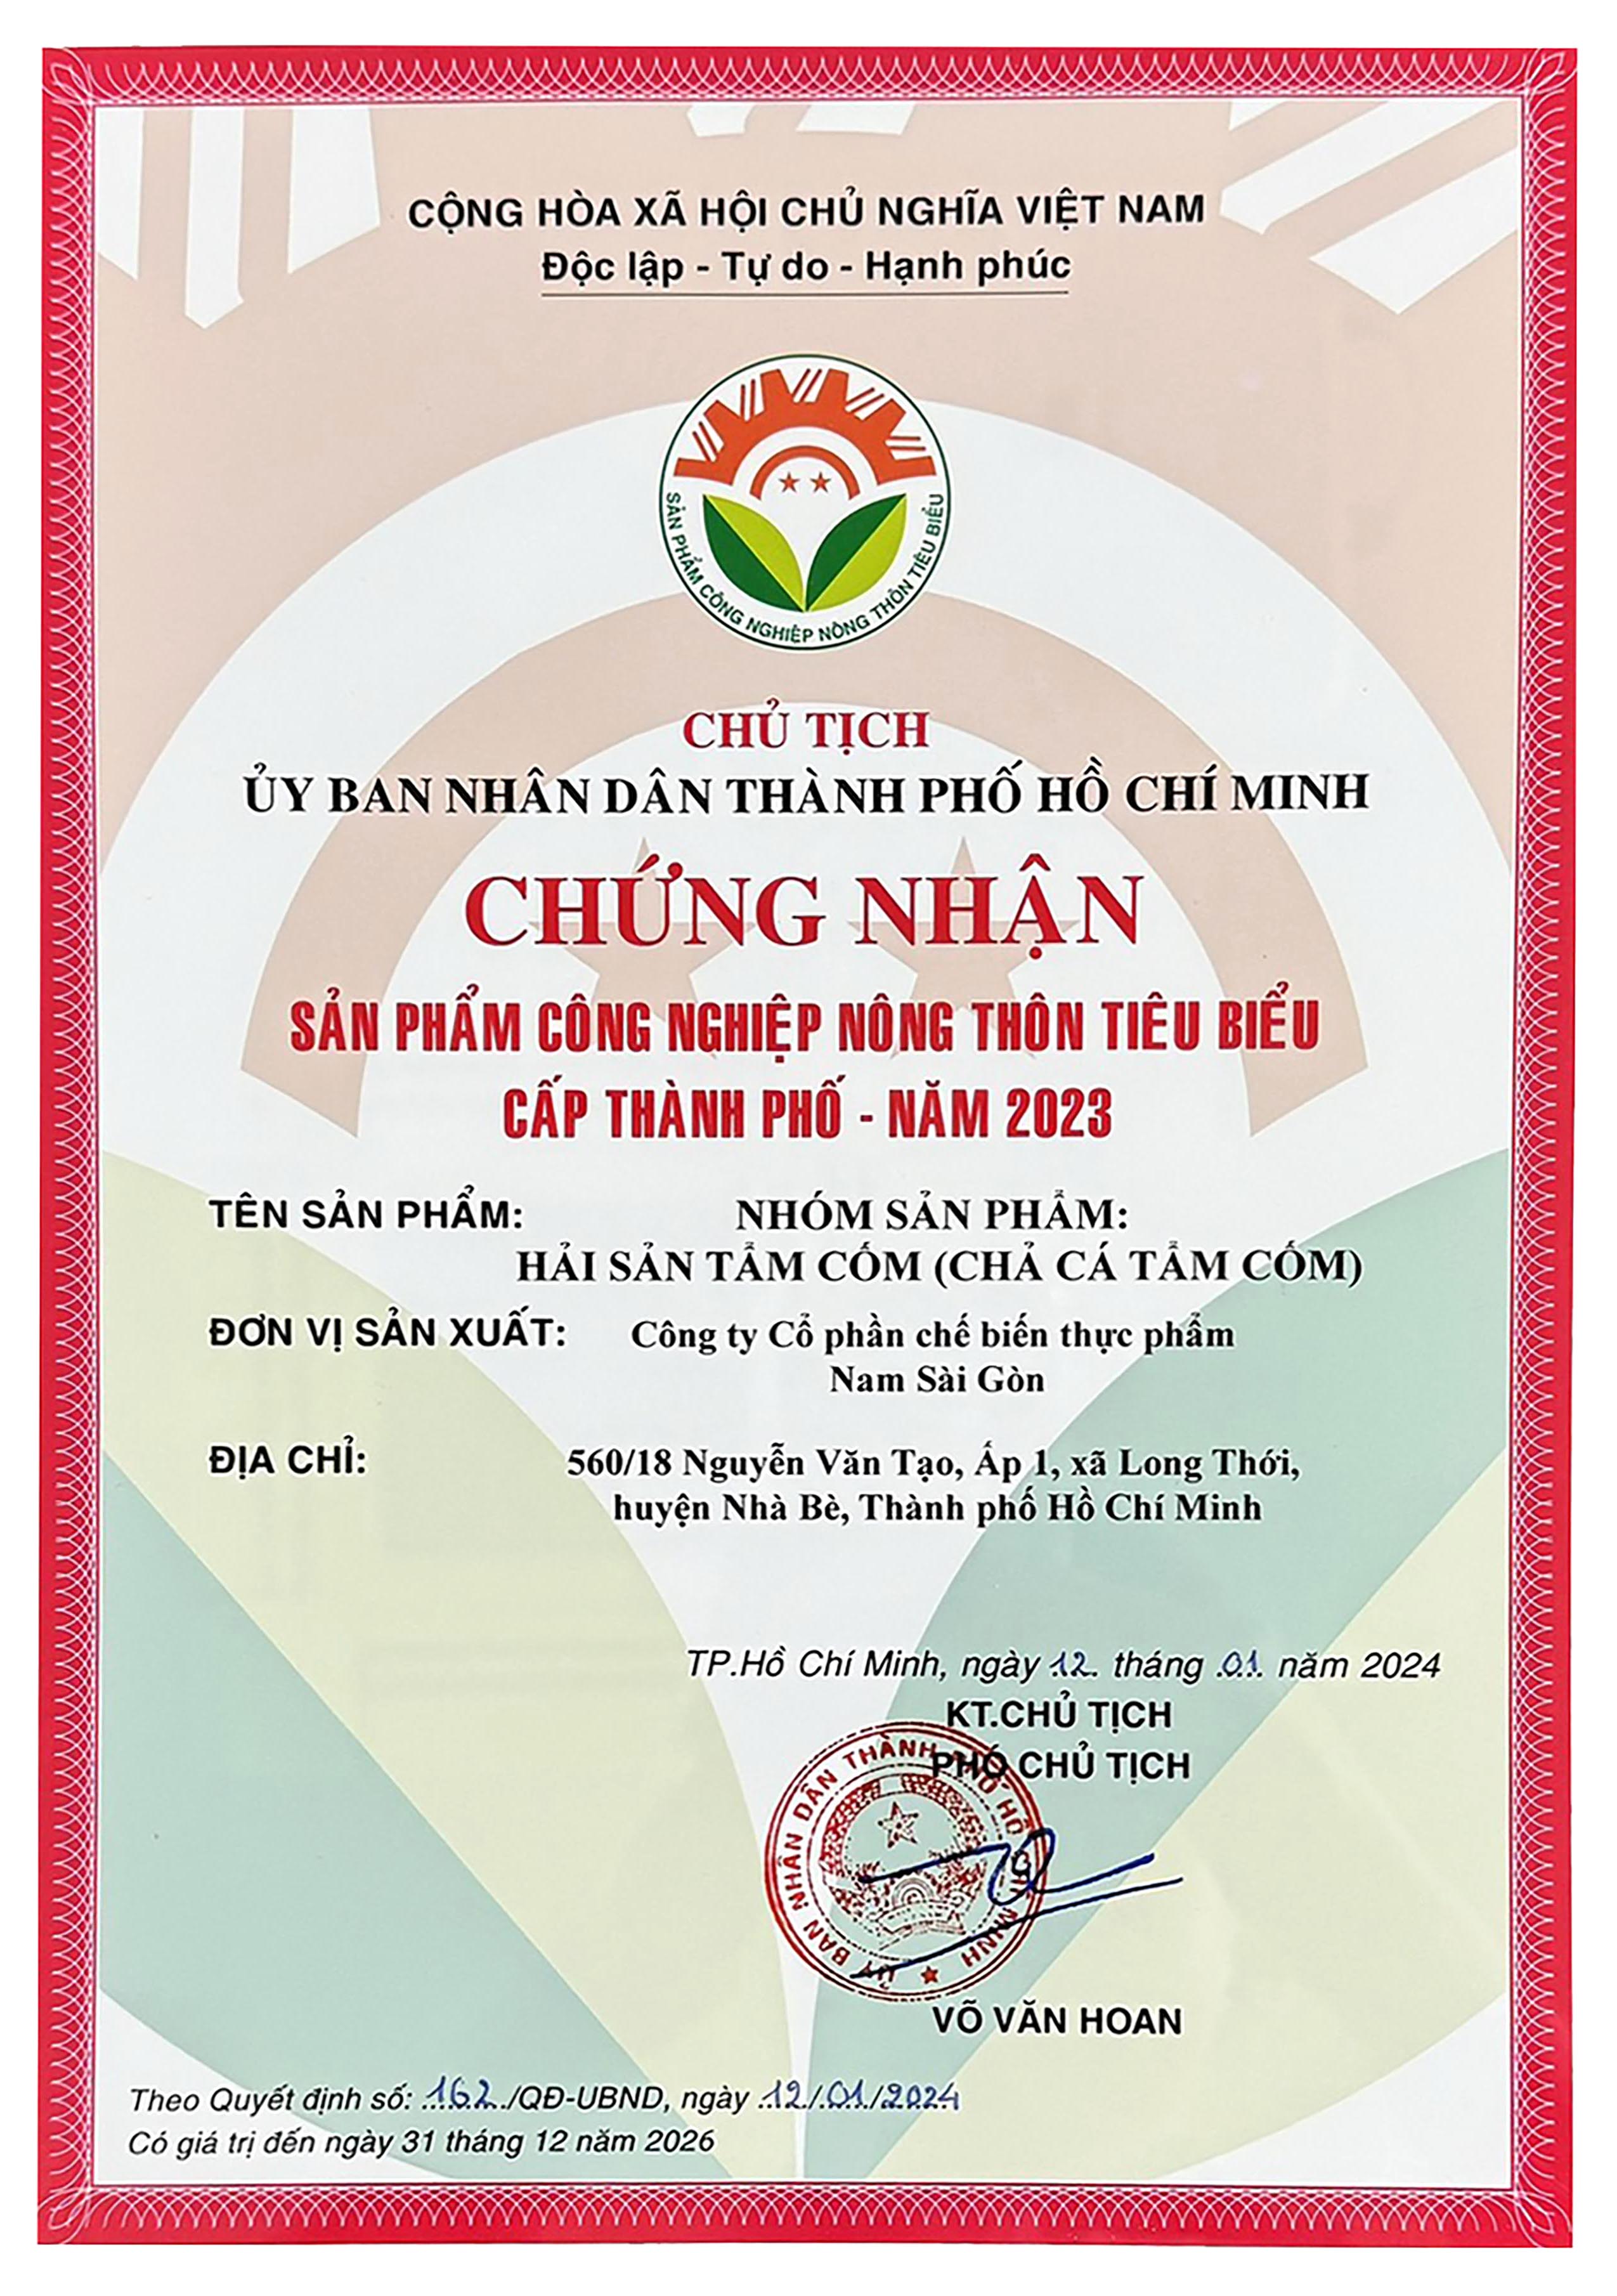 Nhóm sản phẩm tẩm cốm Nam Sài Gòn Food đạt chứng nhận SP CNNT tiêu biểu cấp Thành phố